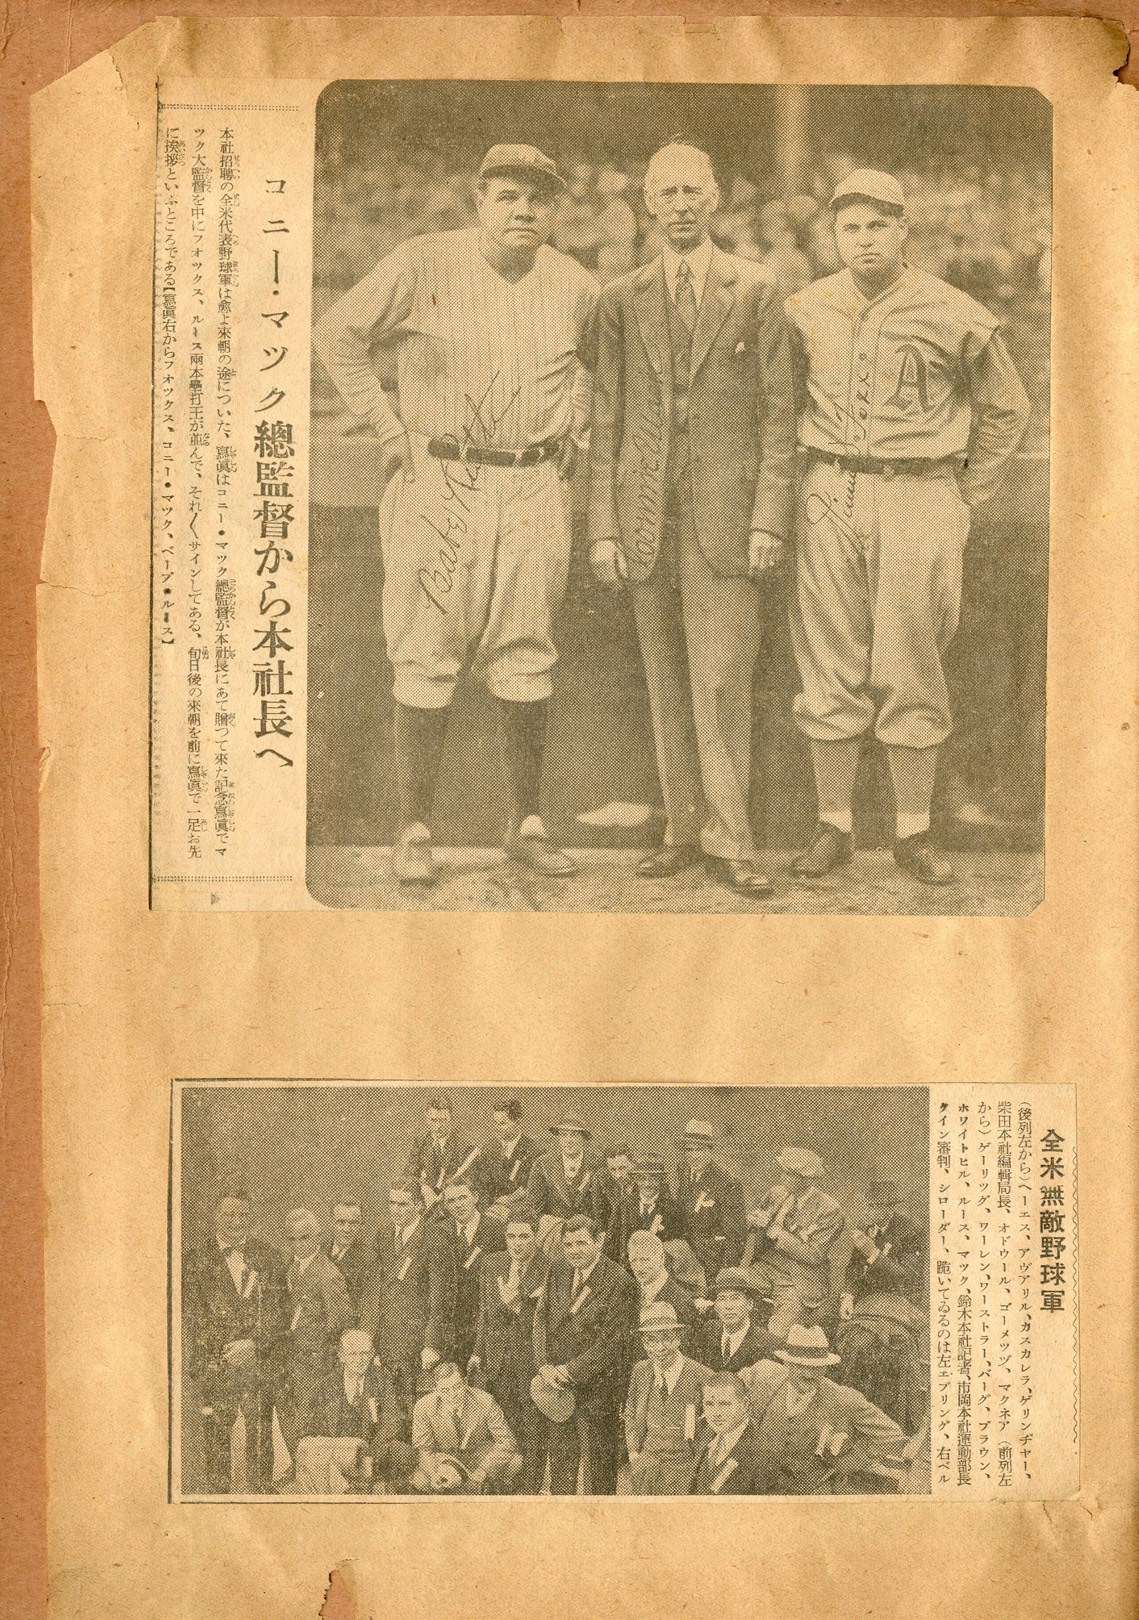 - 1934 Tour of Japan Scrapbook